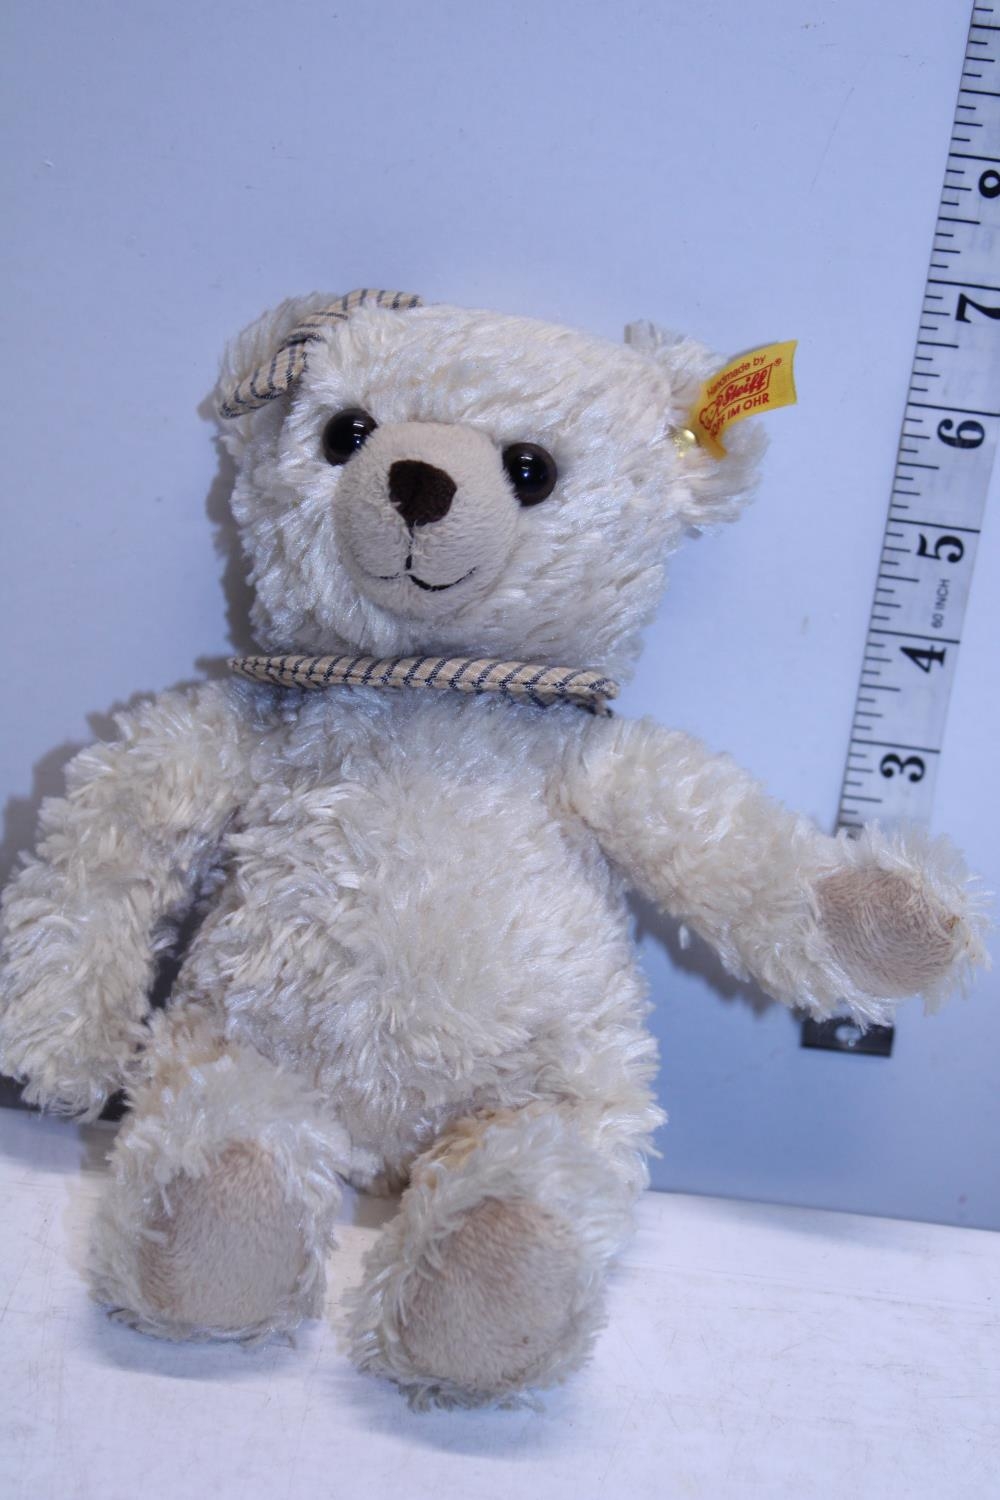 A small Steiff teddy bear called Clara A707266